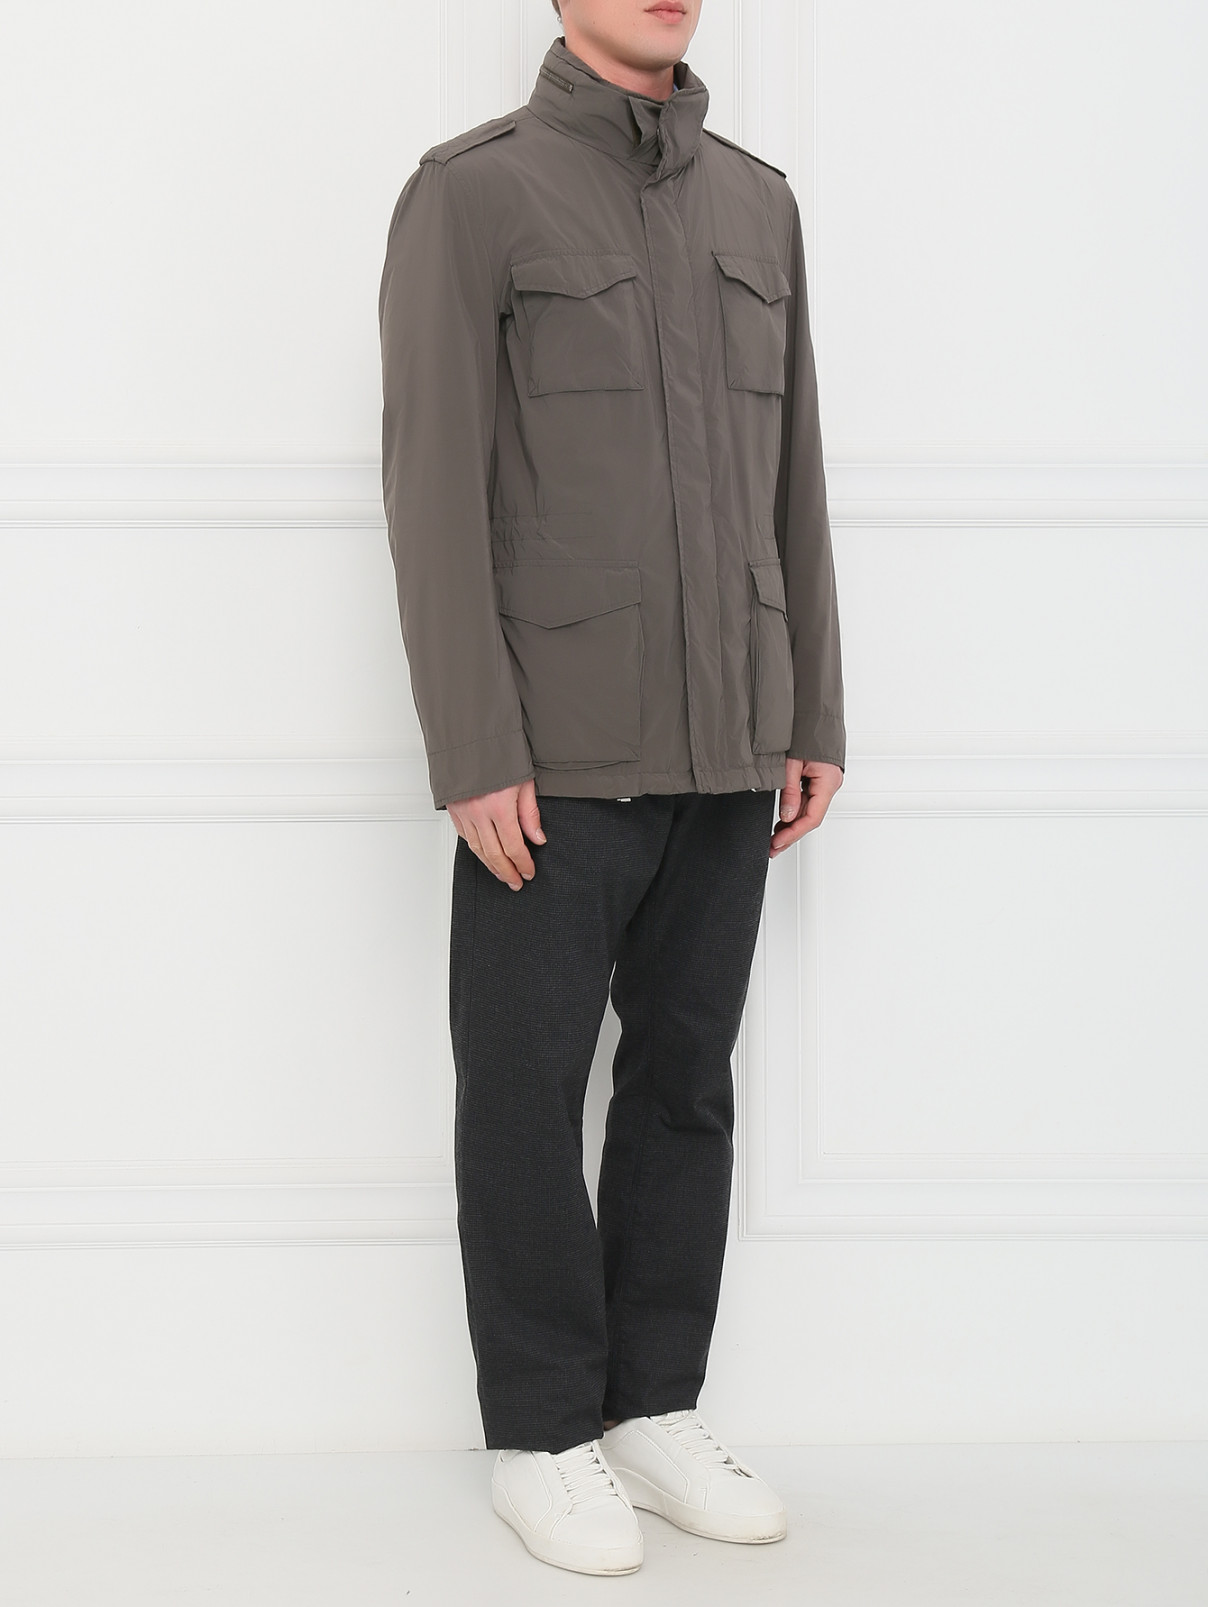 Куртка на молнии с накладными карманами Herno  –  Модель Общий вид  – Цвет:  Зеленый